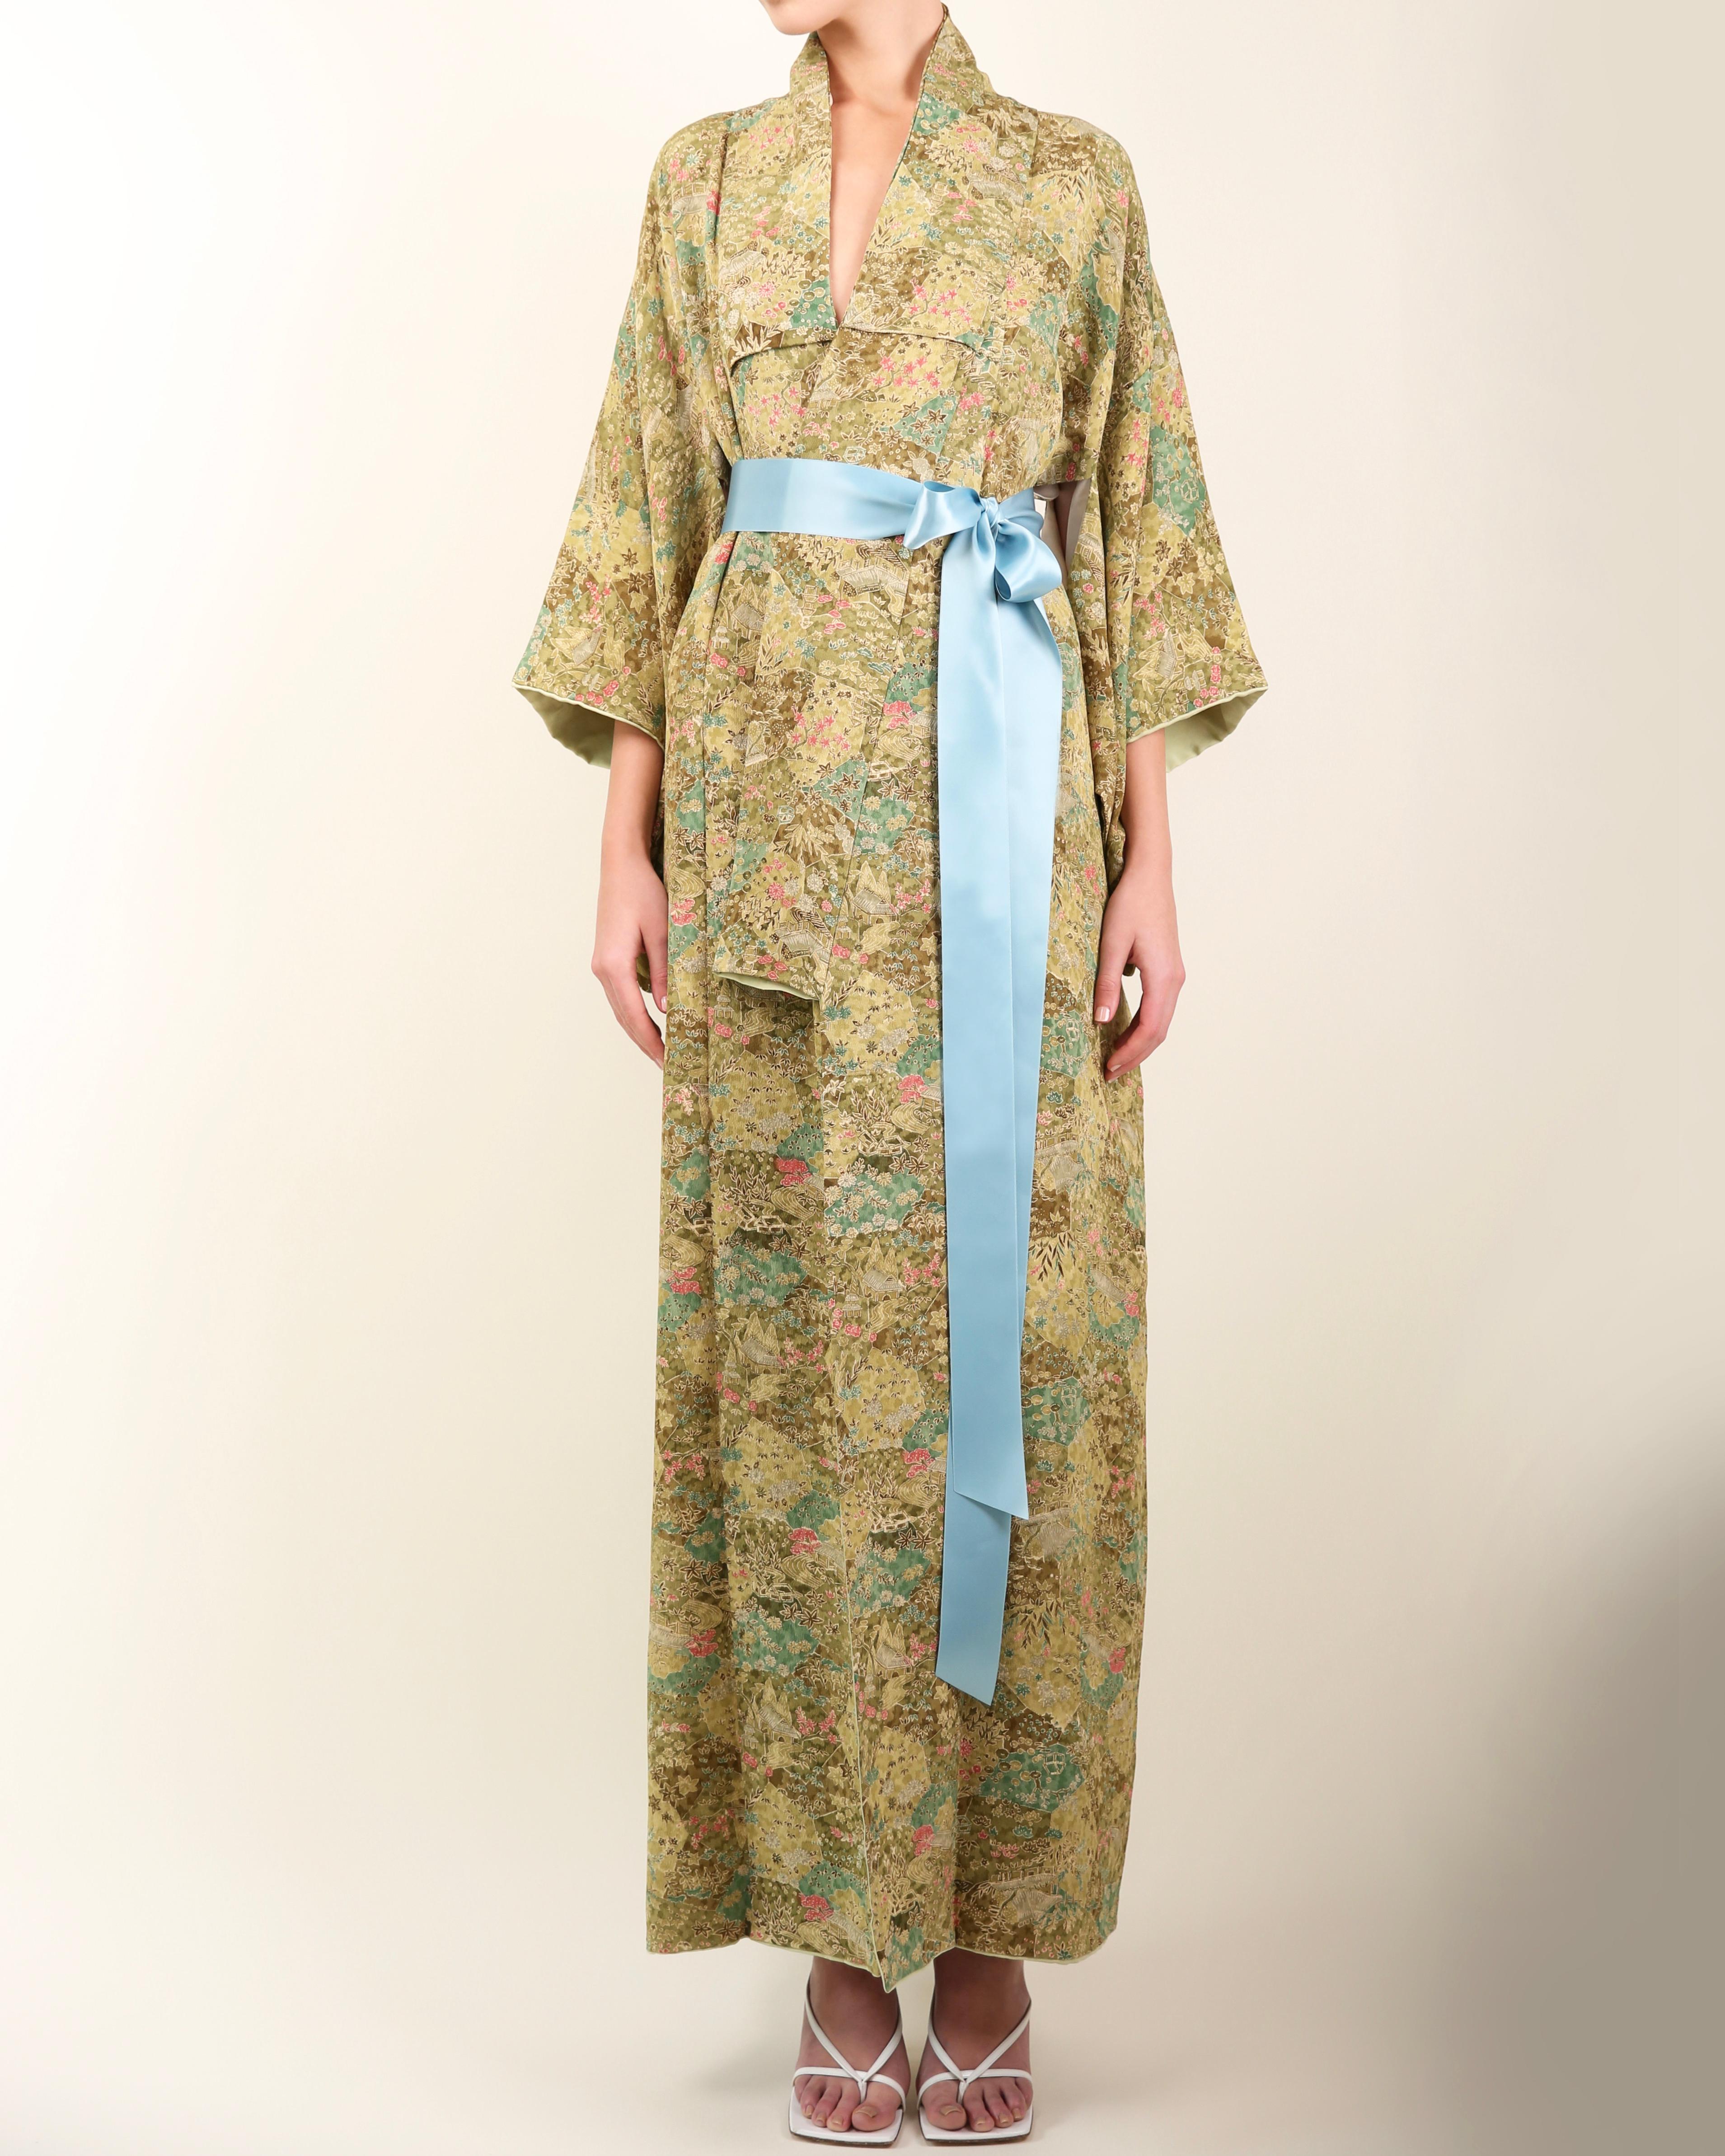 Kimono japonais vintage
Fabriqué à la main au Japon 
Longueur du plancher
Des nuances variées de vert mélangées à du gris pâle et du rose
Imprimé floral style jardin
Livré avec un ruban de soie bleu vif qui vous permet de le porter ouvert ou